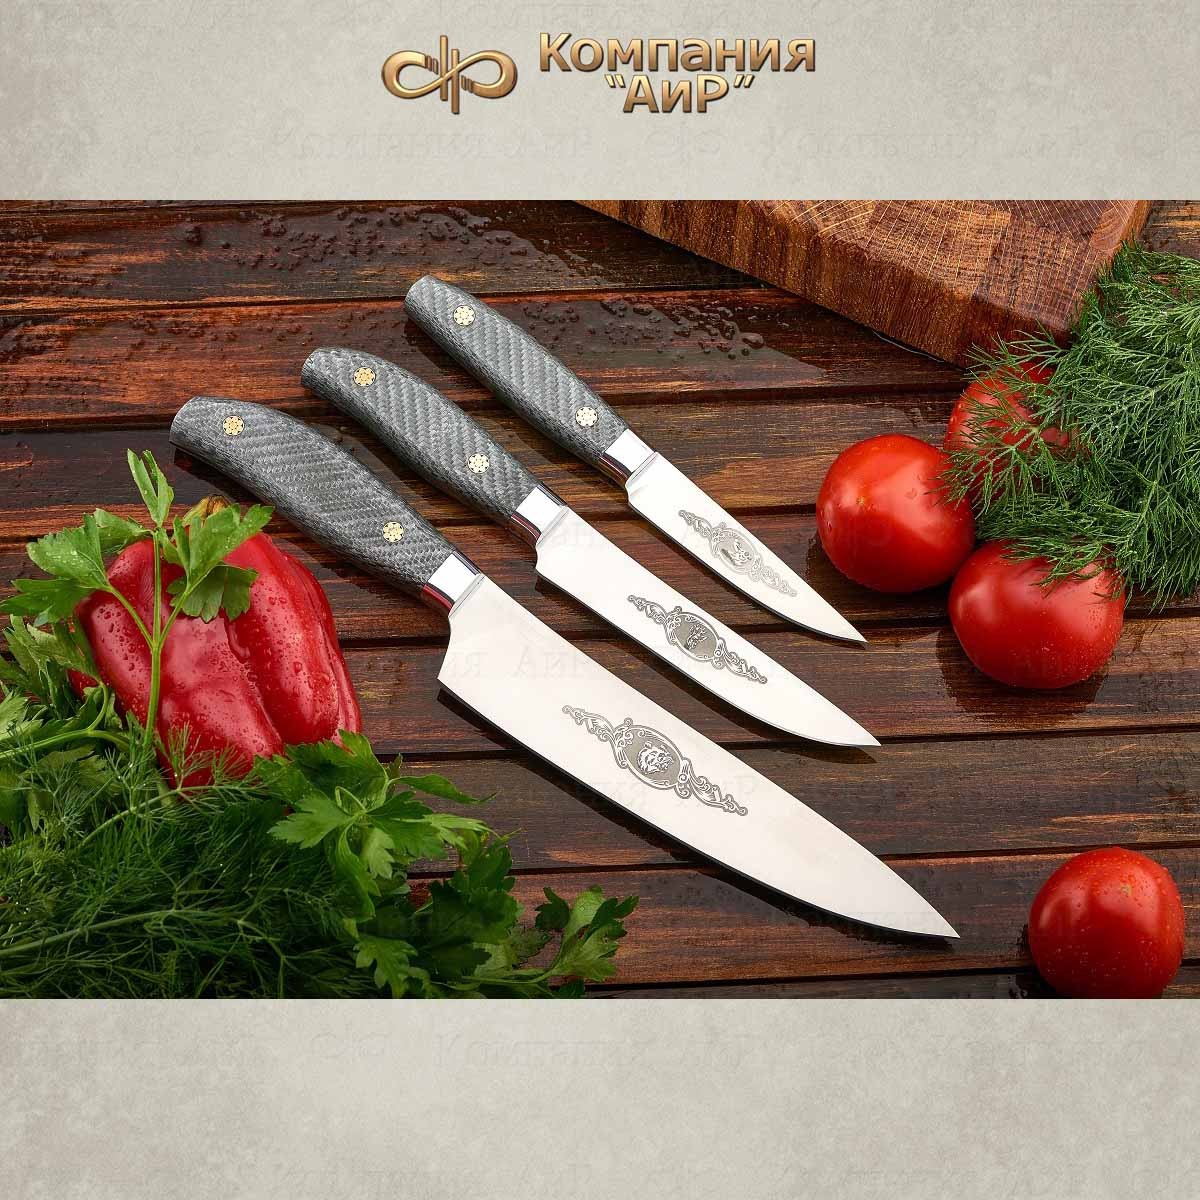 Где Купить В Нижнем Новгороде Кухонные Ножи